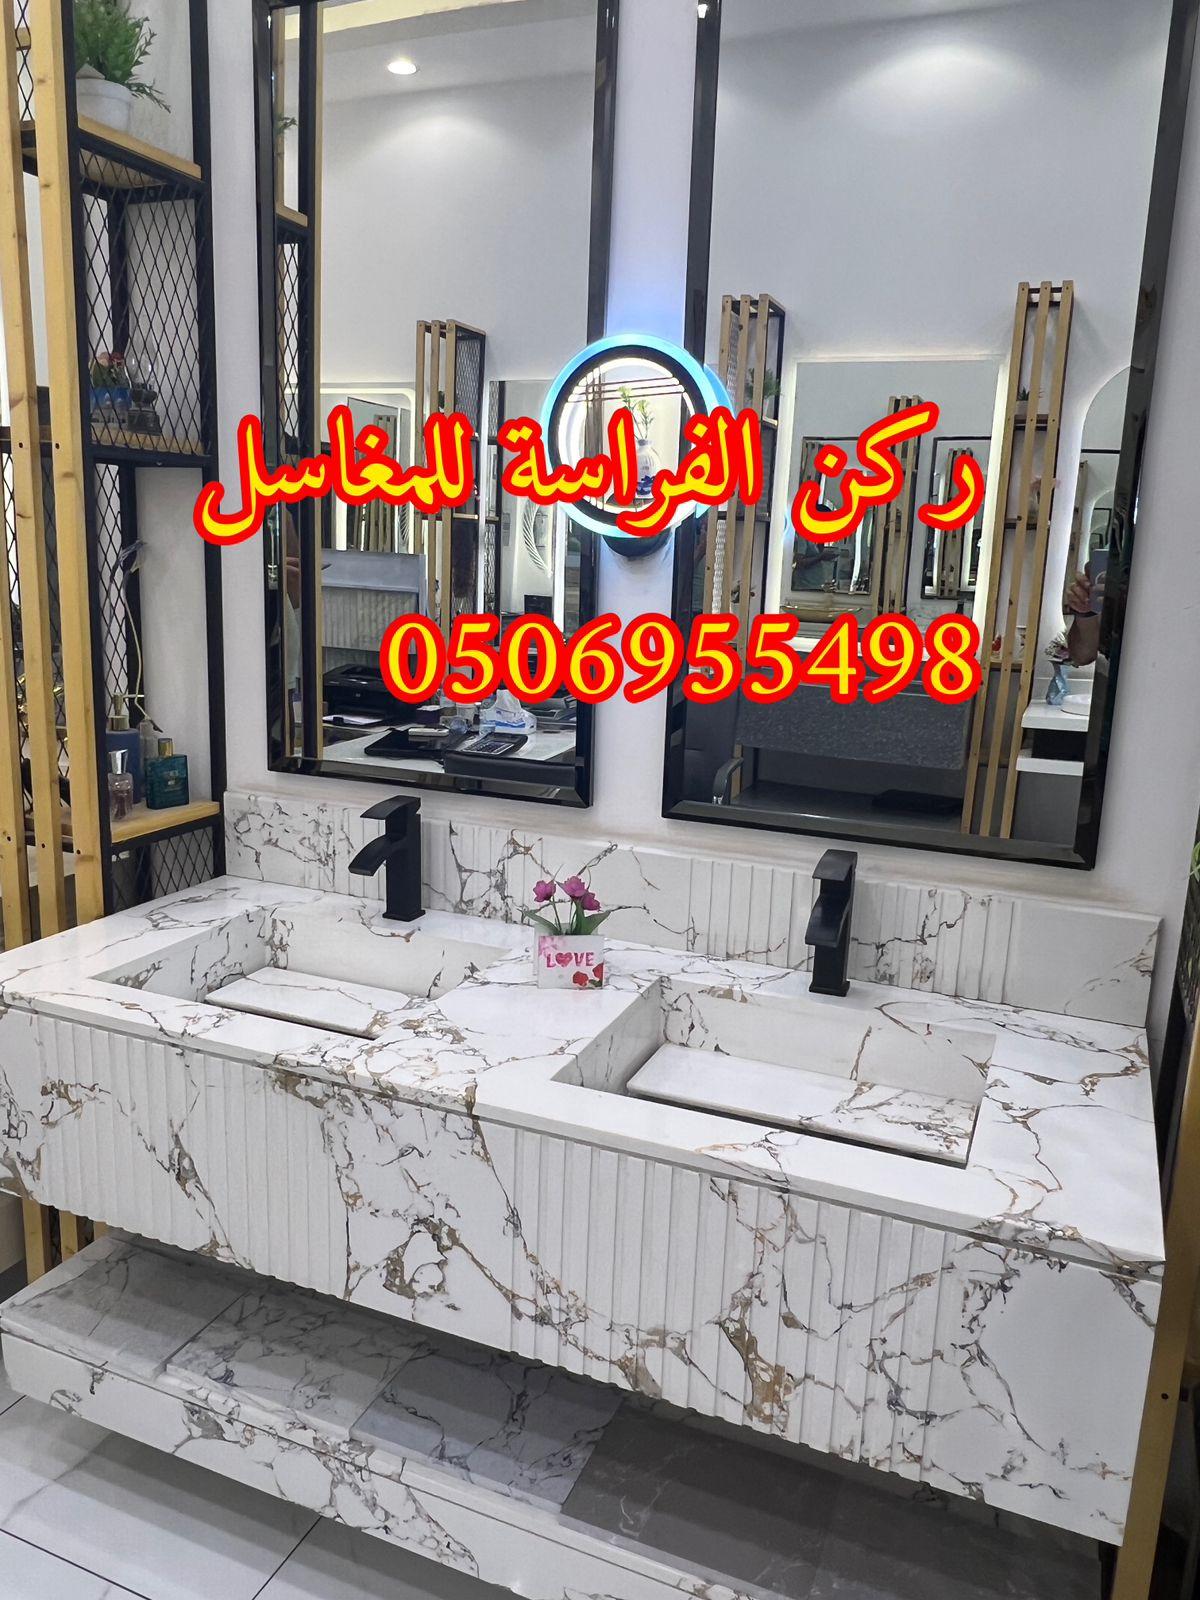 مغاسل حمامات رخام مودرن فخمة في الرياض,0506955498 424805838